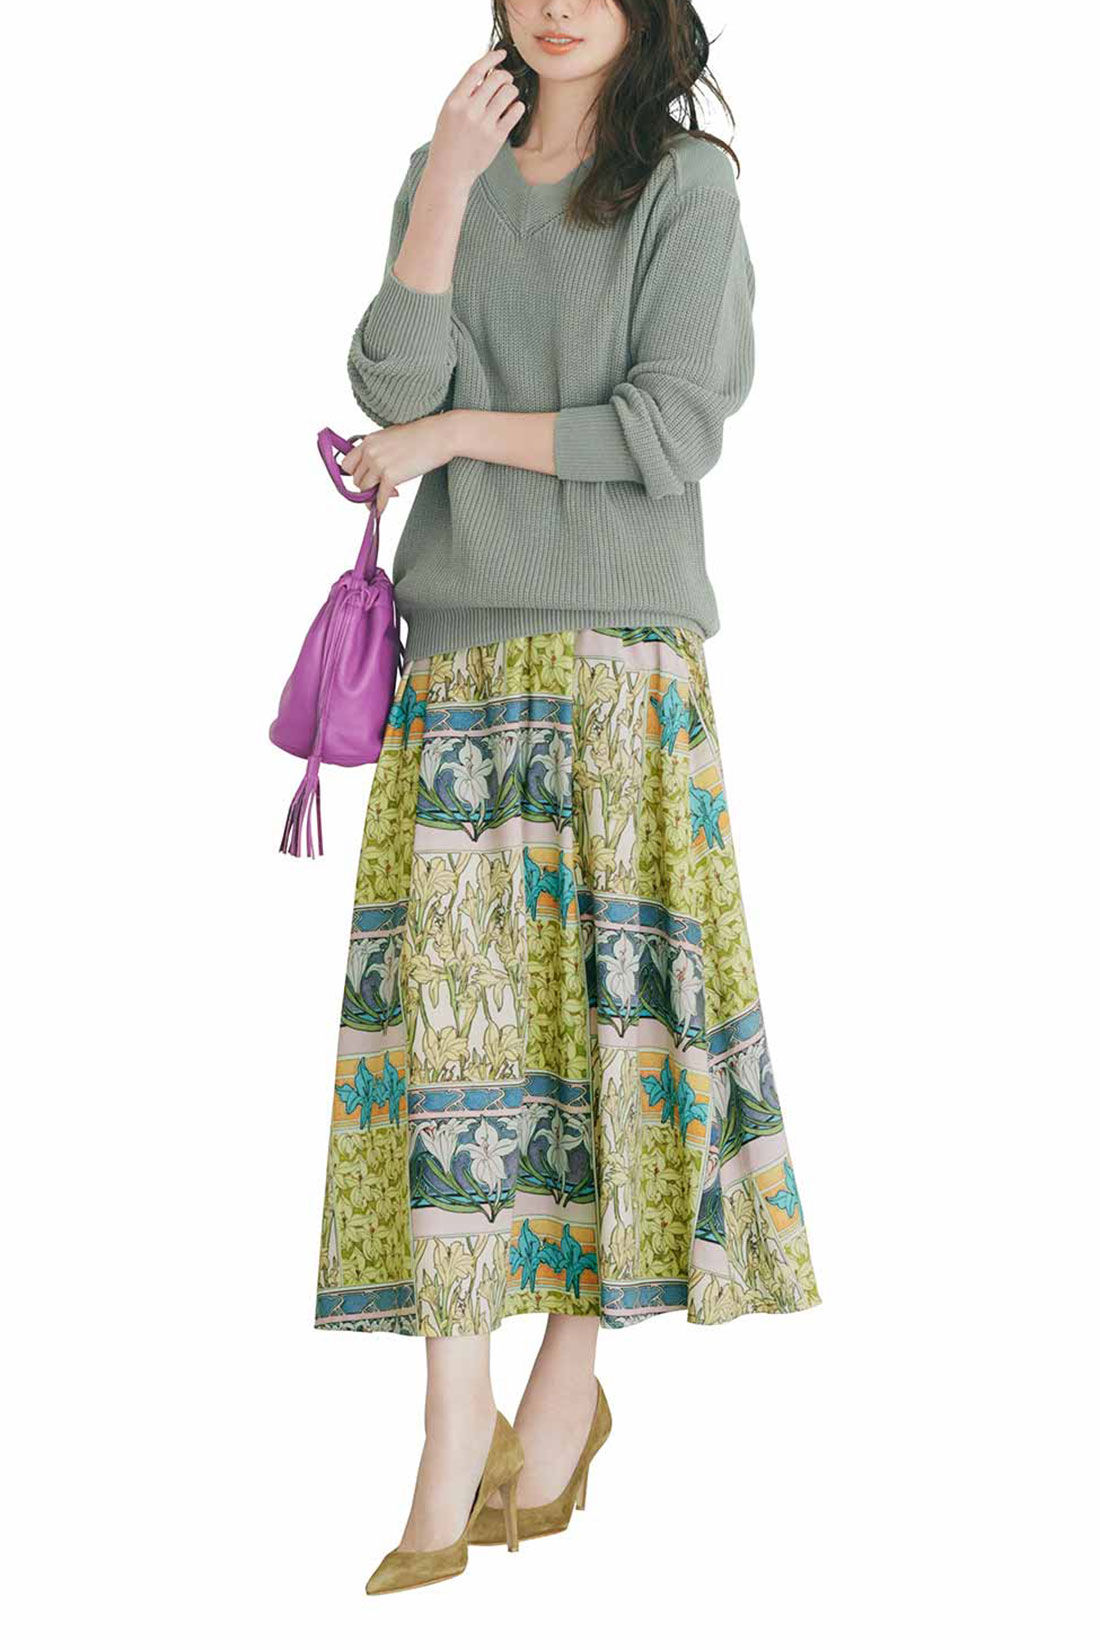 IEDIT[イディット]　優美なミュシャの図案をまとう クラッシックなプリントスカート〈ブラック〉|※着用イメージです。お届けするカラーとは異なります。